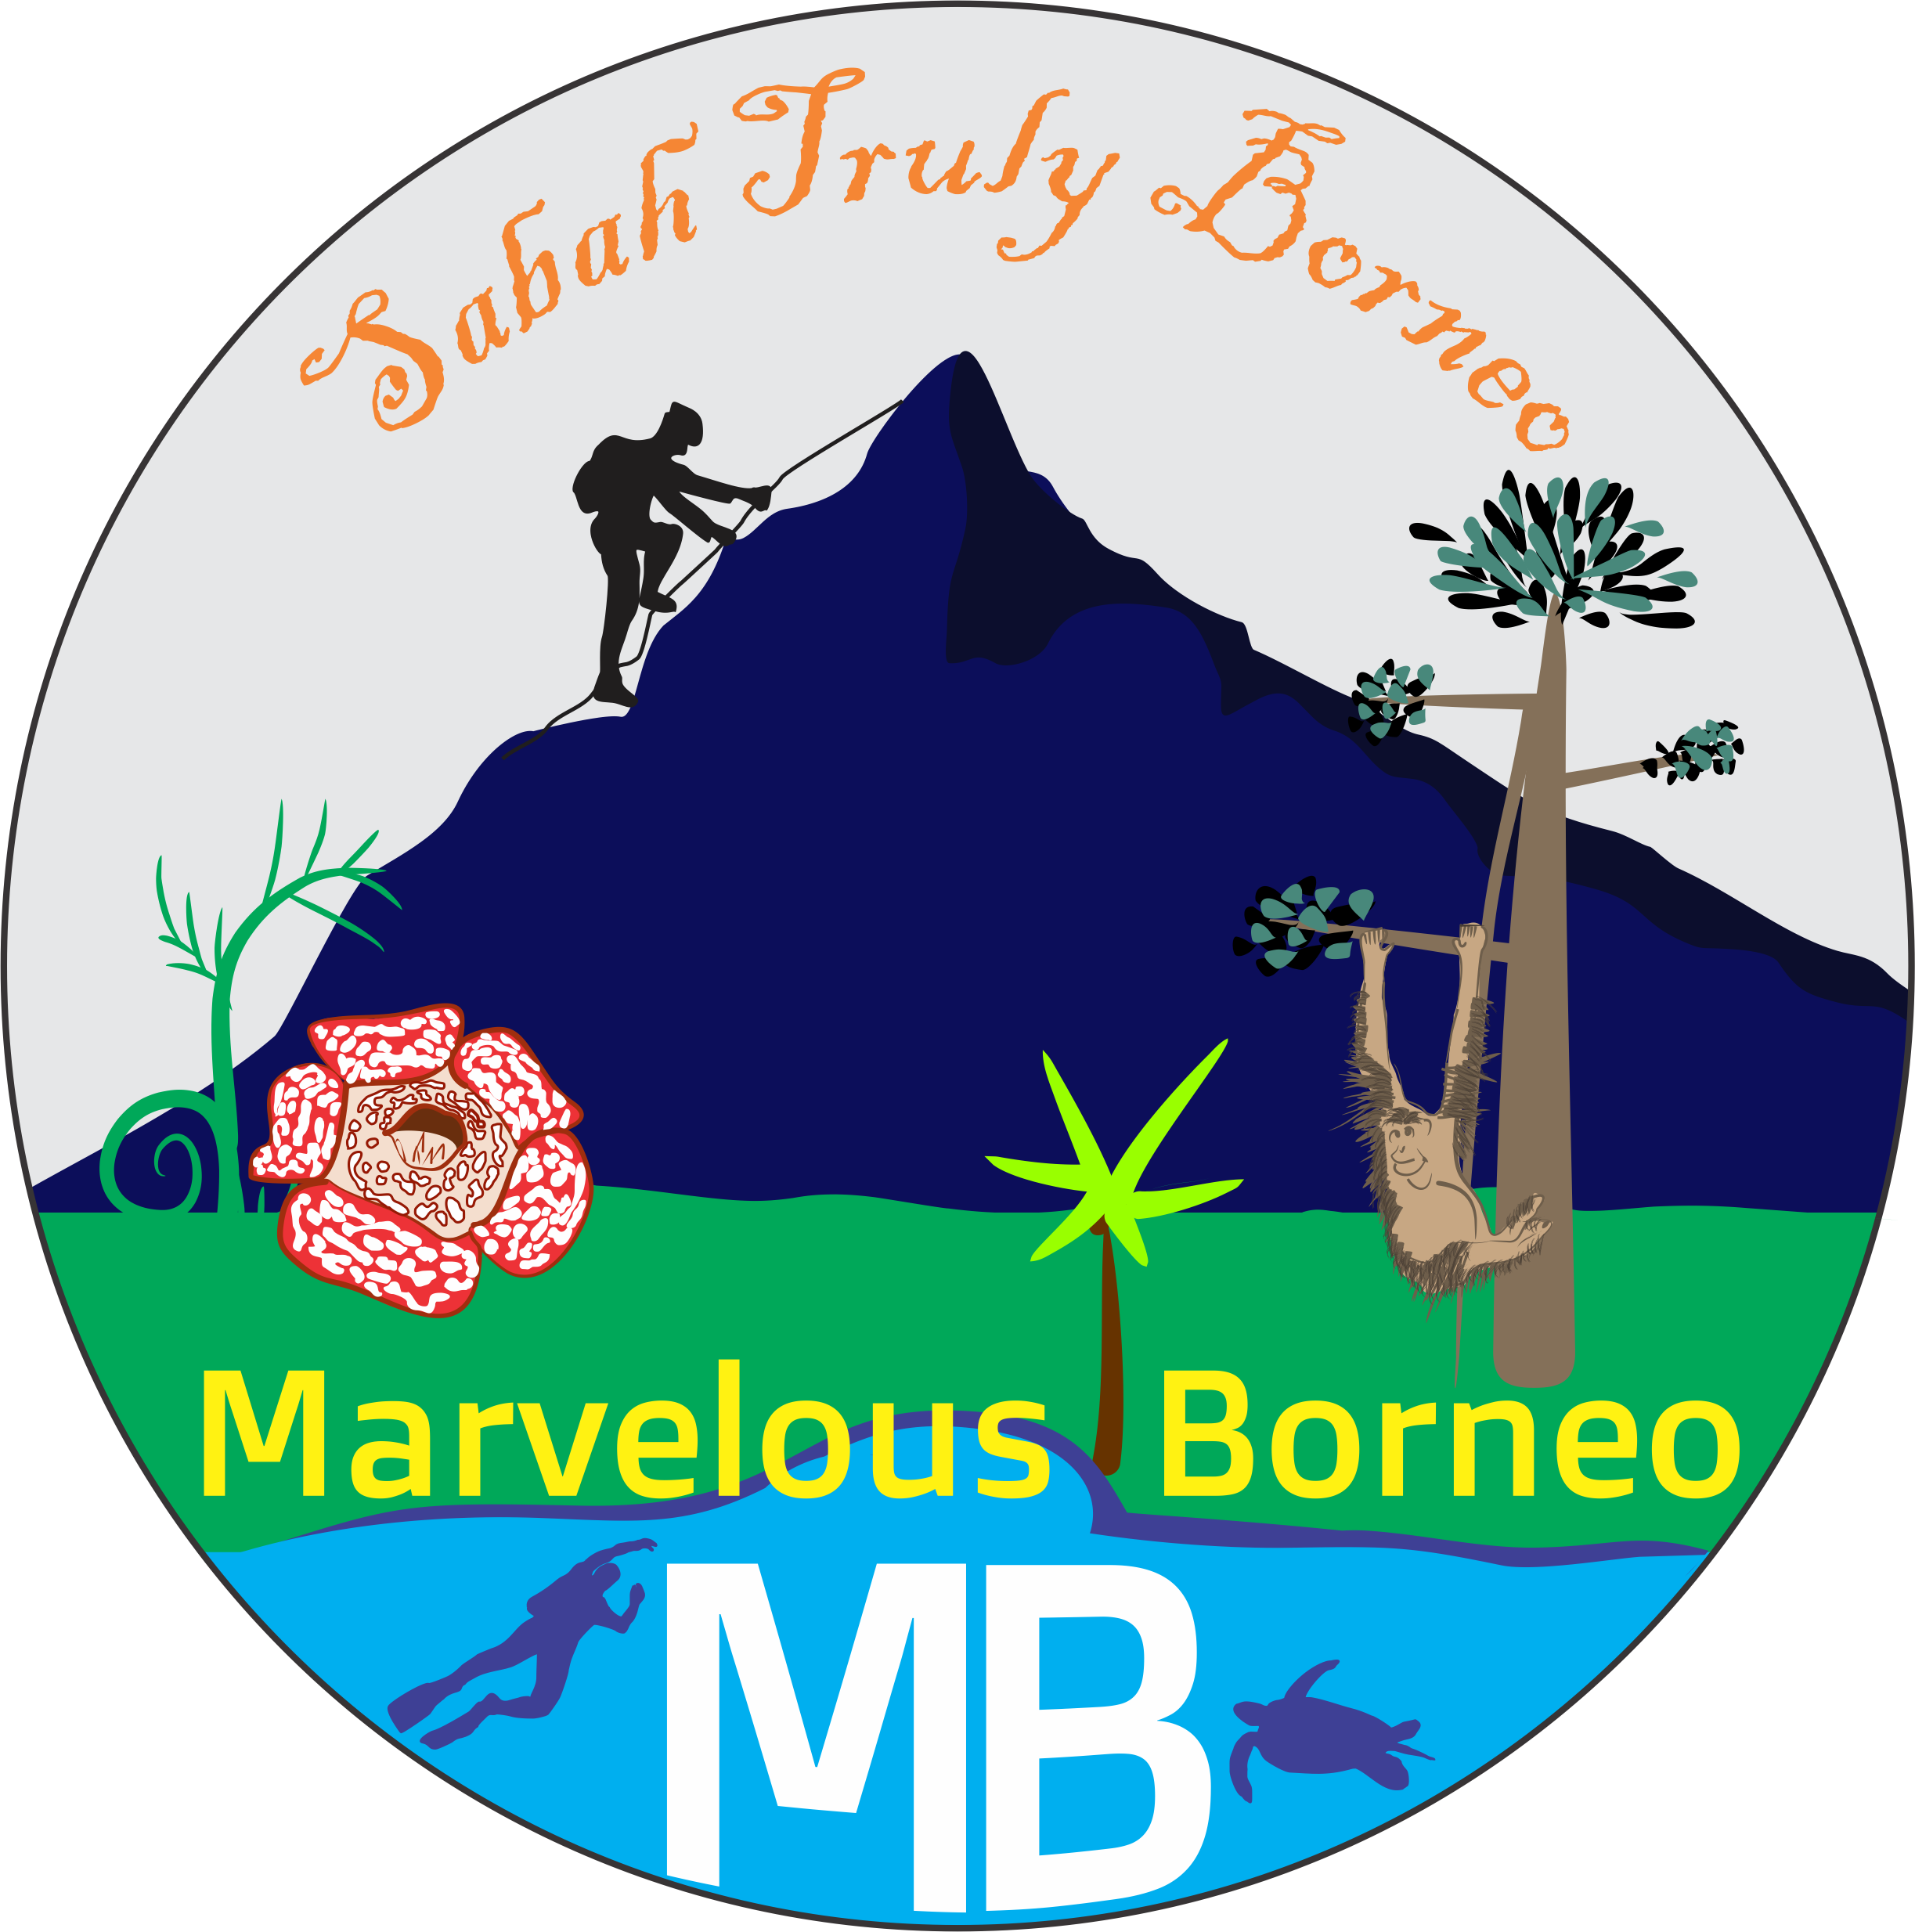 Marvelous Borneo